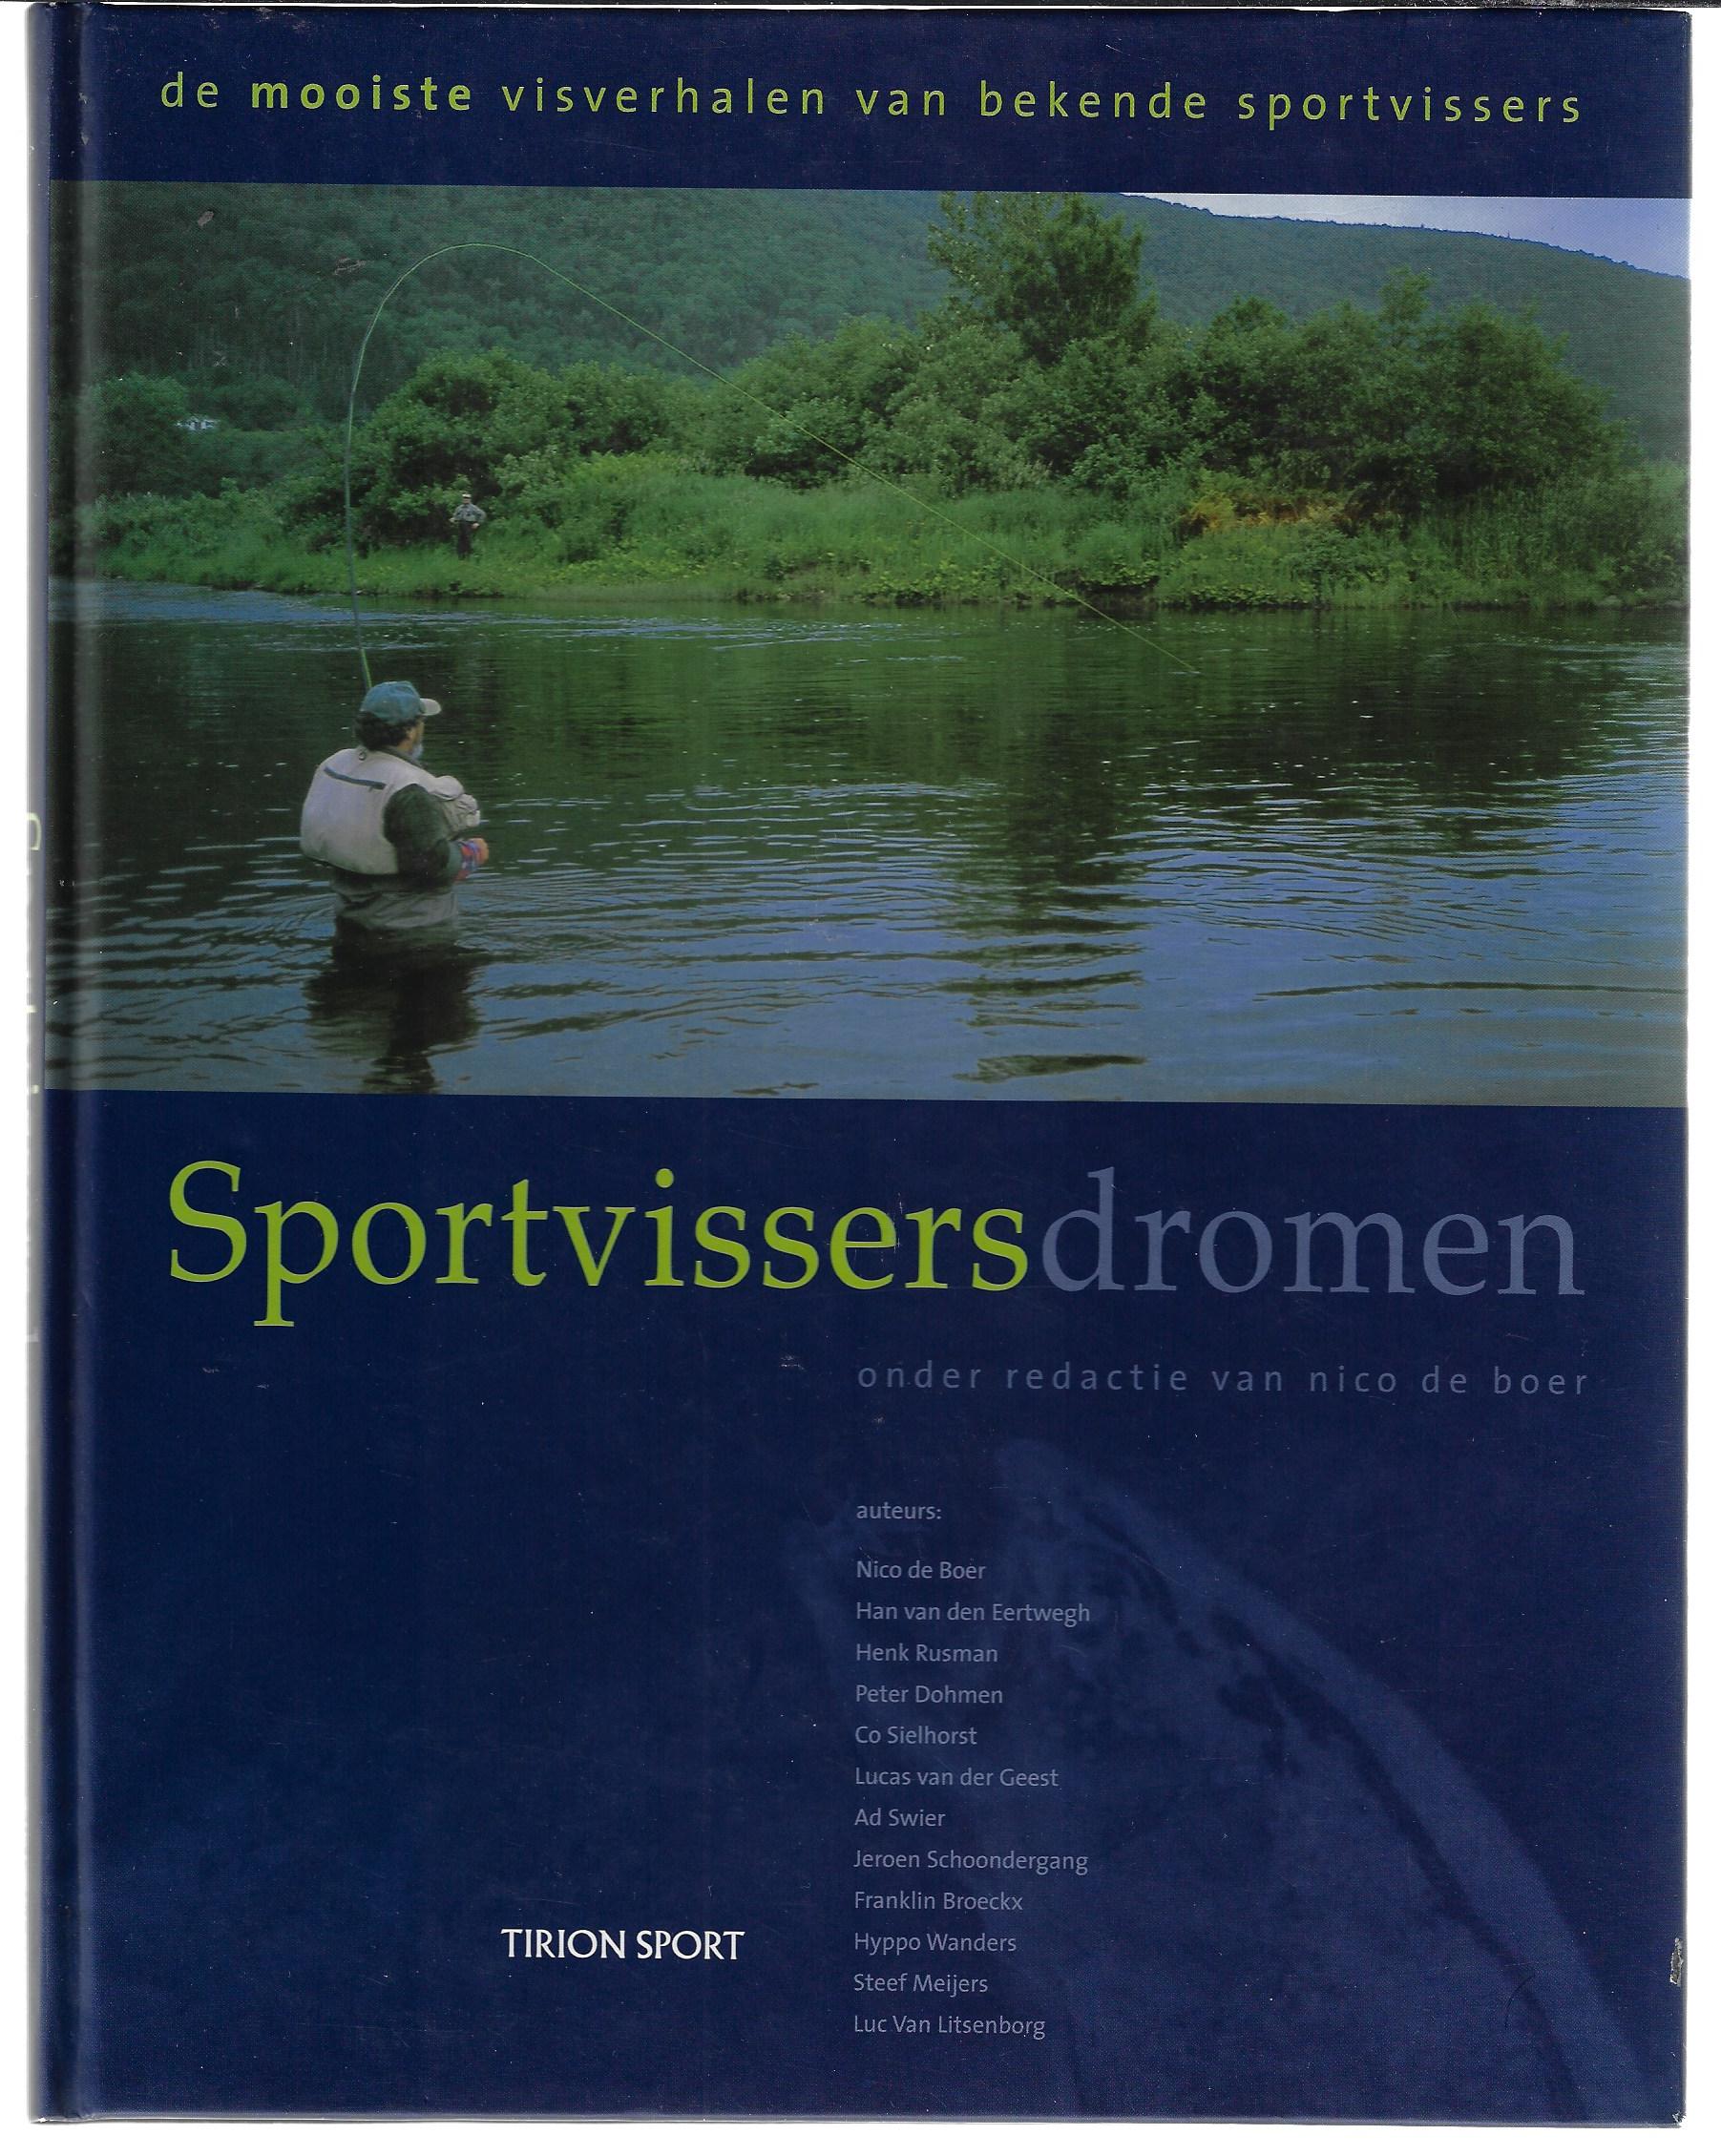 Boer, Nico de - Sportvissersdromen -De mooiste visverhalen van bekende sportvissers